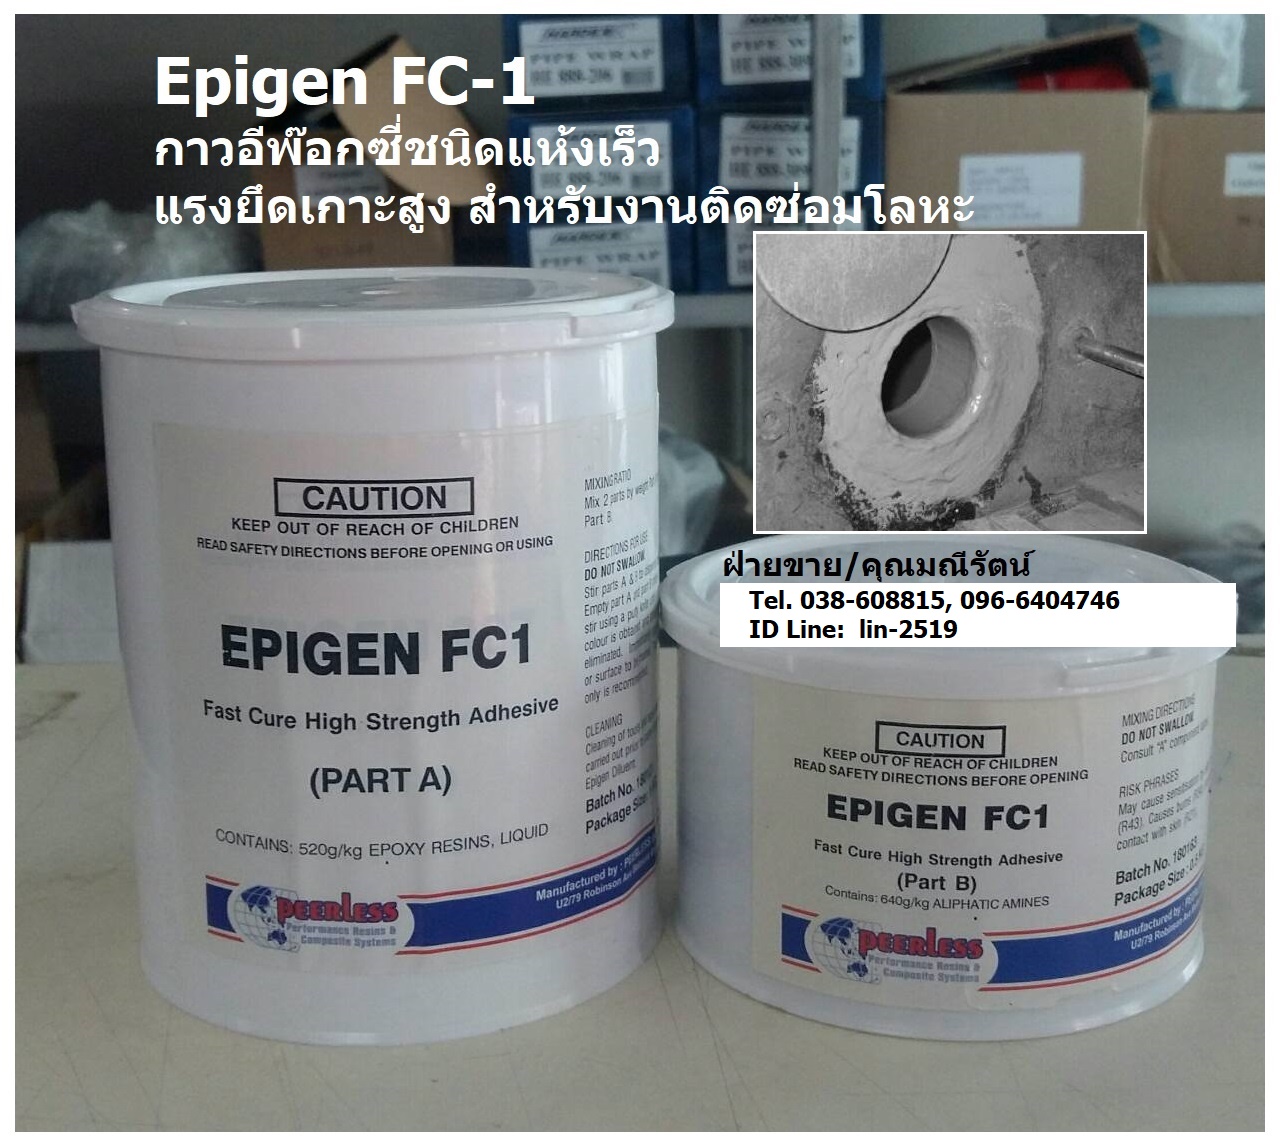 Epigen FC-1 Fast Cure Adhesive & Patch อีพ็อกซี่แห้งเร็ว เหมาะสำหรับใช้เป็นกาวติด, เคลือบหรือเชื่อมซ่อม กรณีฉุกเฉิน แห้งไว สามารถใช้ได้กับหลายพื้นผิว รูปที่ 1